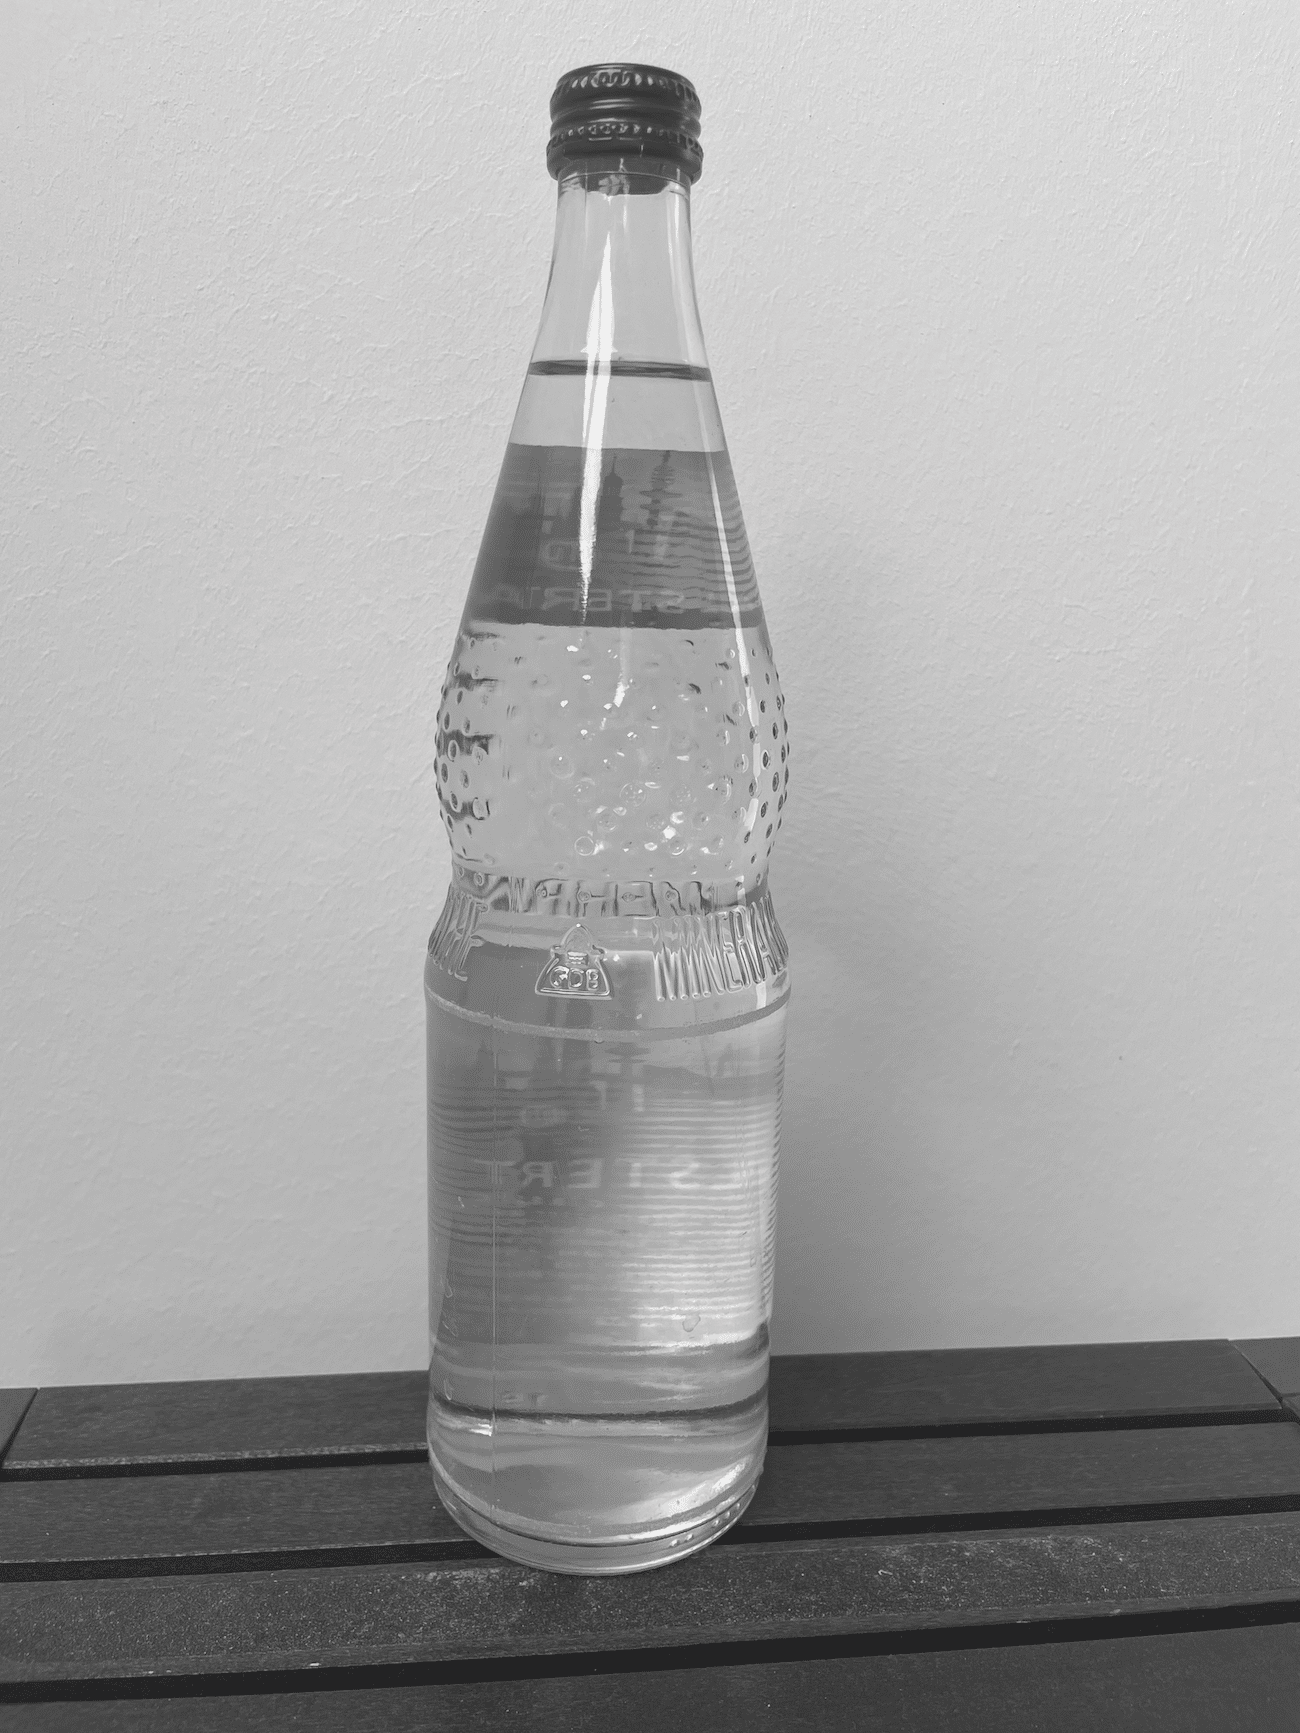 Glasflaschen haben oft einen Anteil an recyceltem Glas